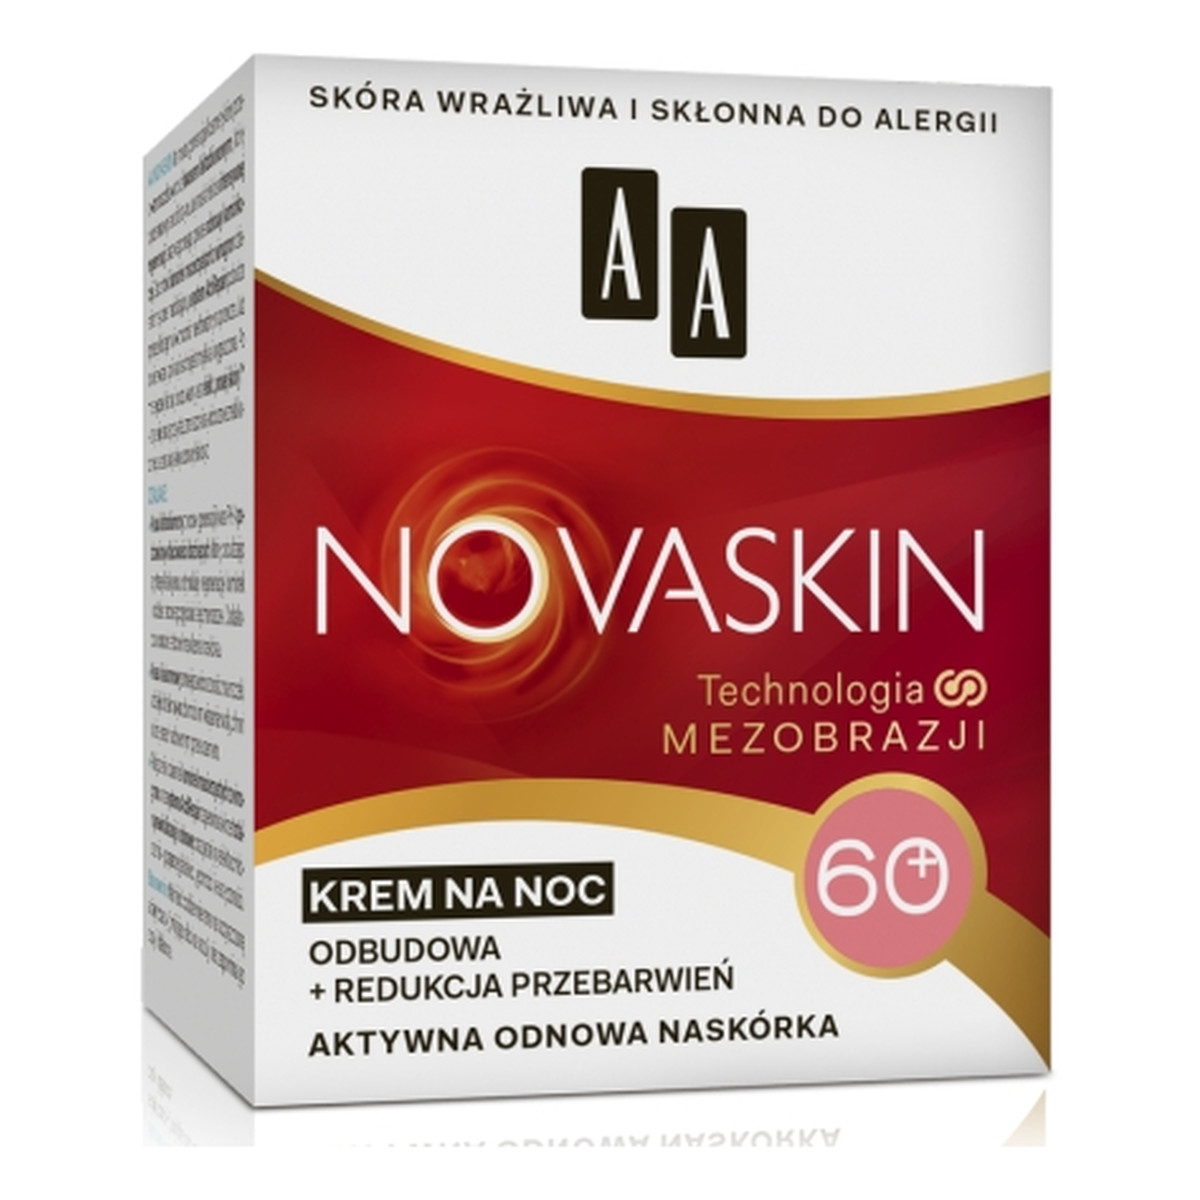 AA Novaskin 60+, Krem na noc - odbudowa + redukcja przebarwień, cera dojrzała 50ml